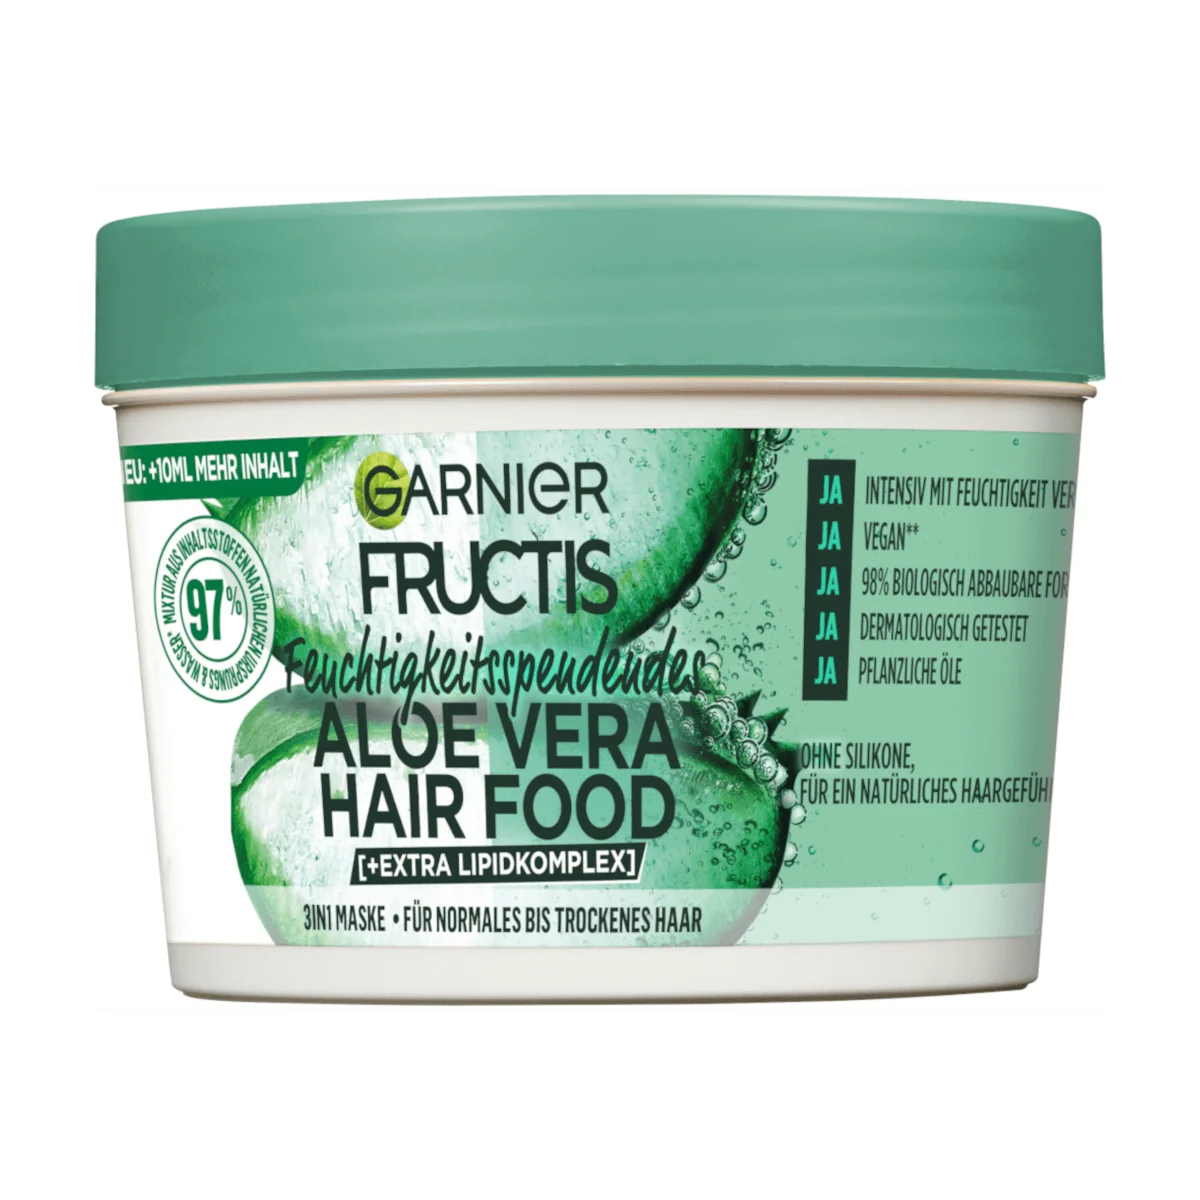 Garnier Fructis Haarkur Aloe Vera Hair Food 3in1 Maske